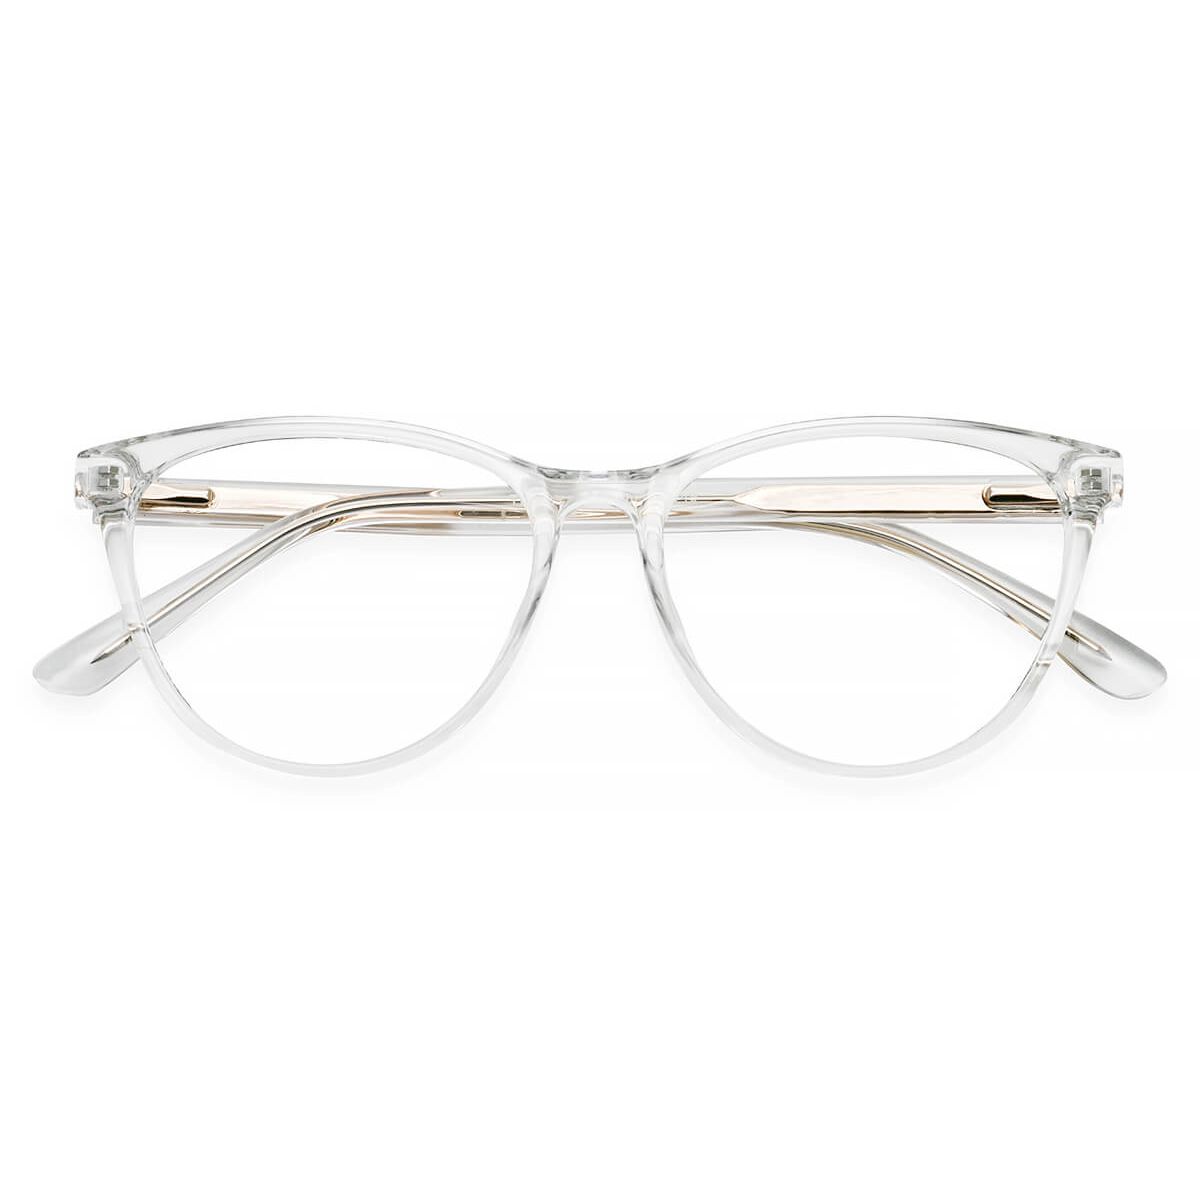 TR7507 Cat-eye Clear Eyeglasses Frames | Leoptique